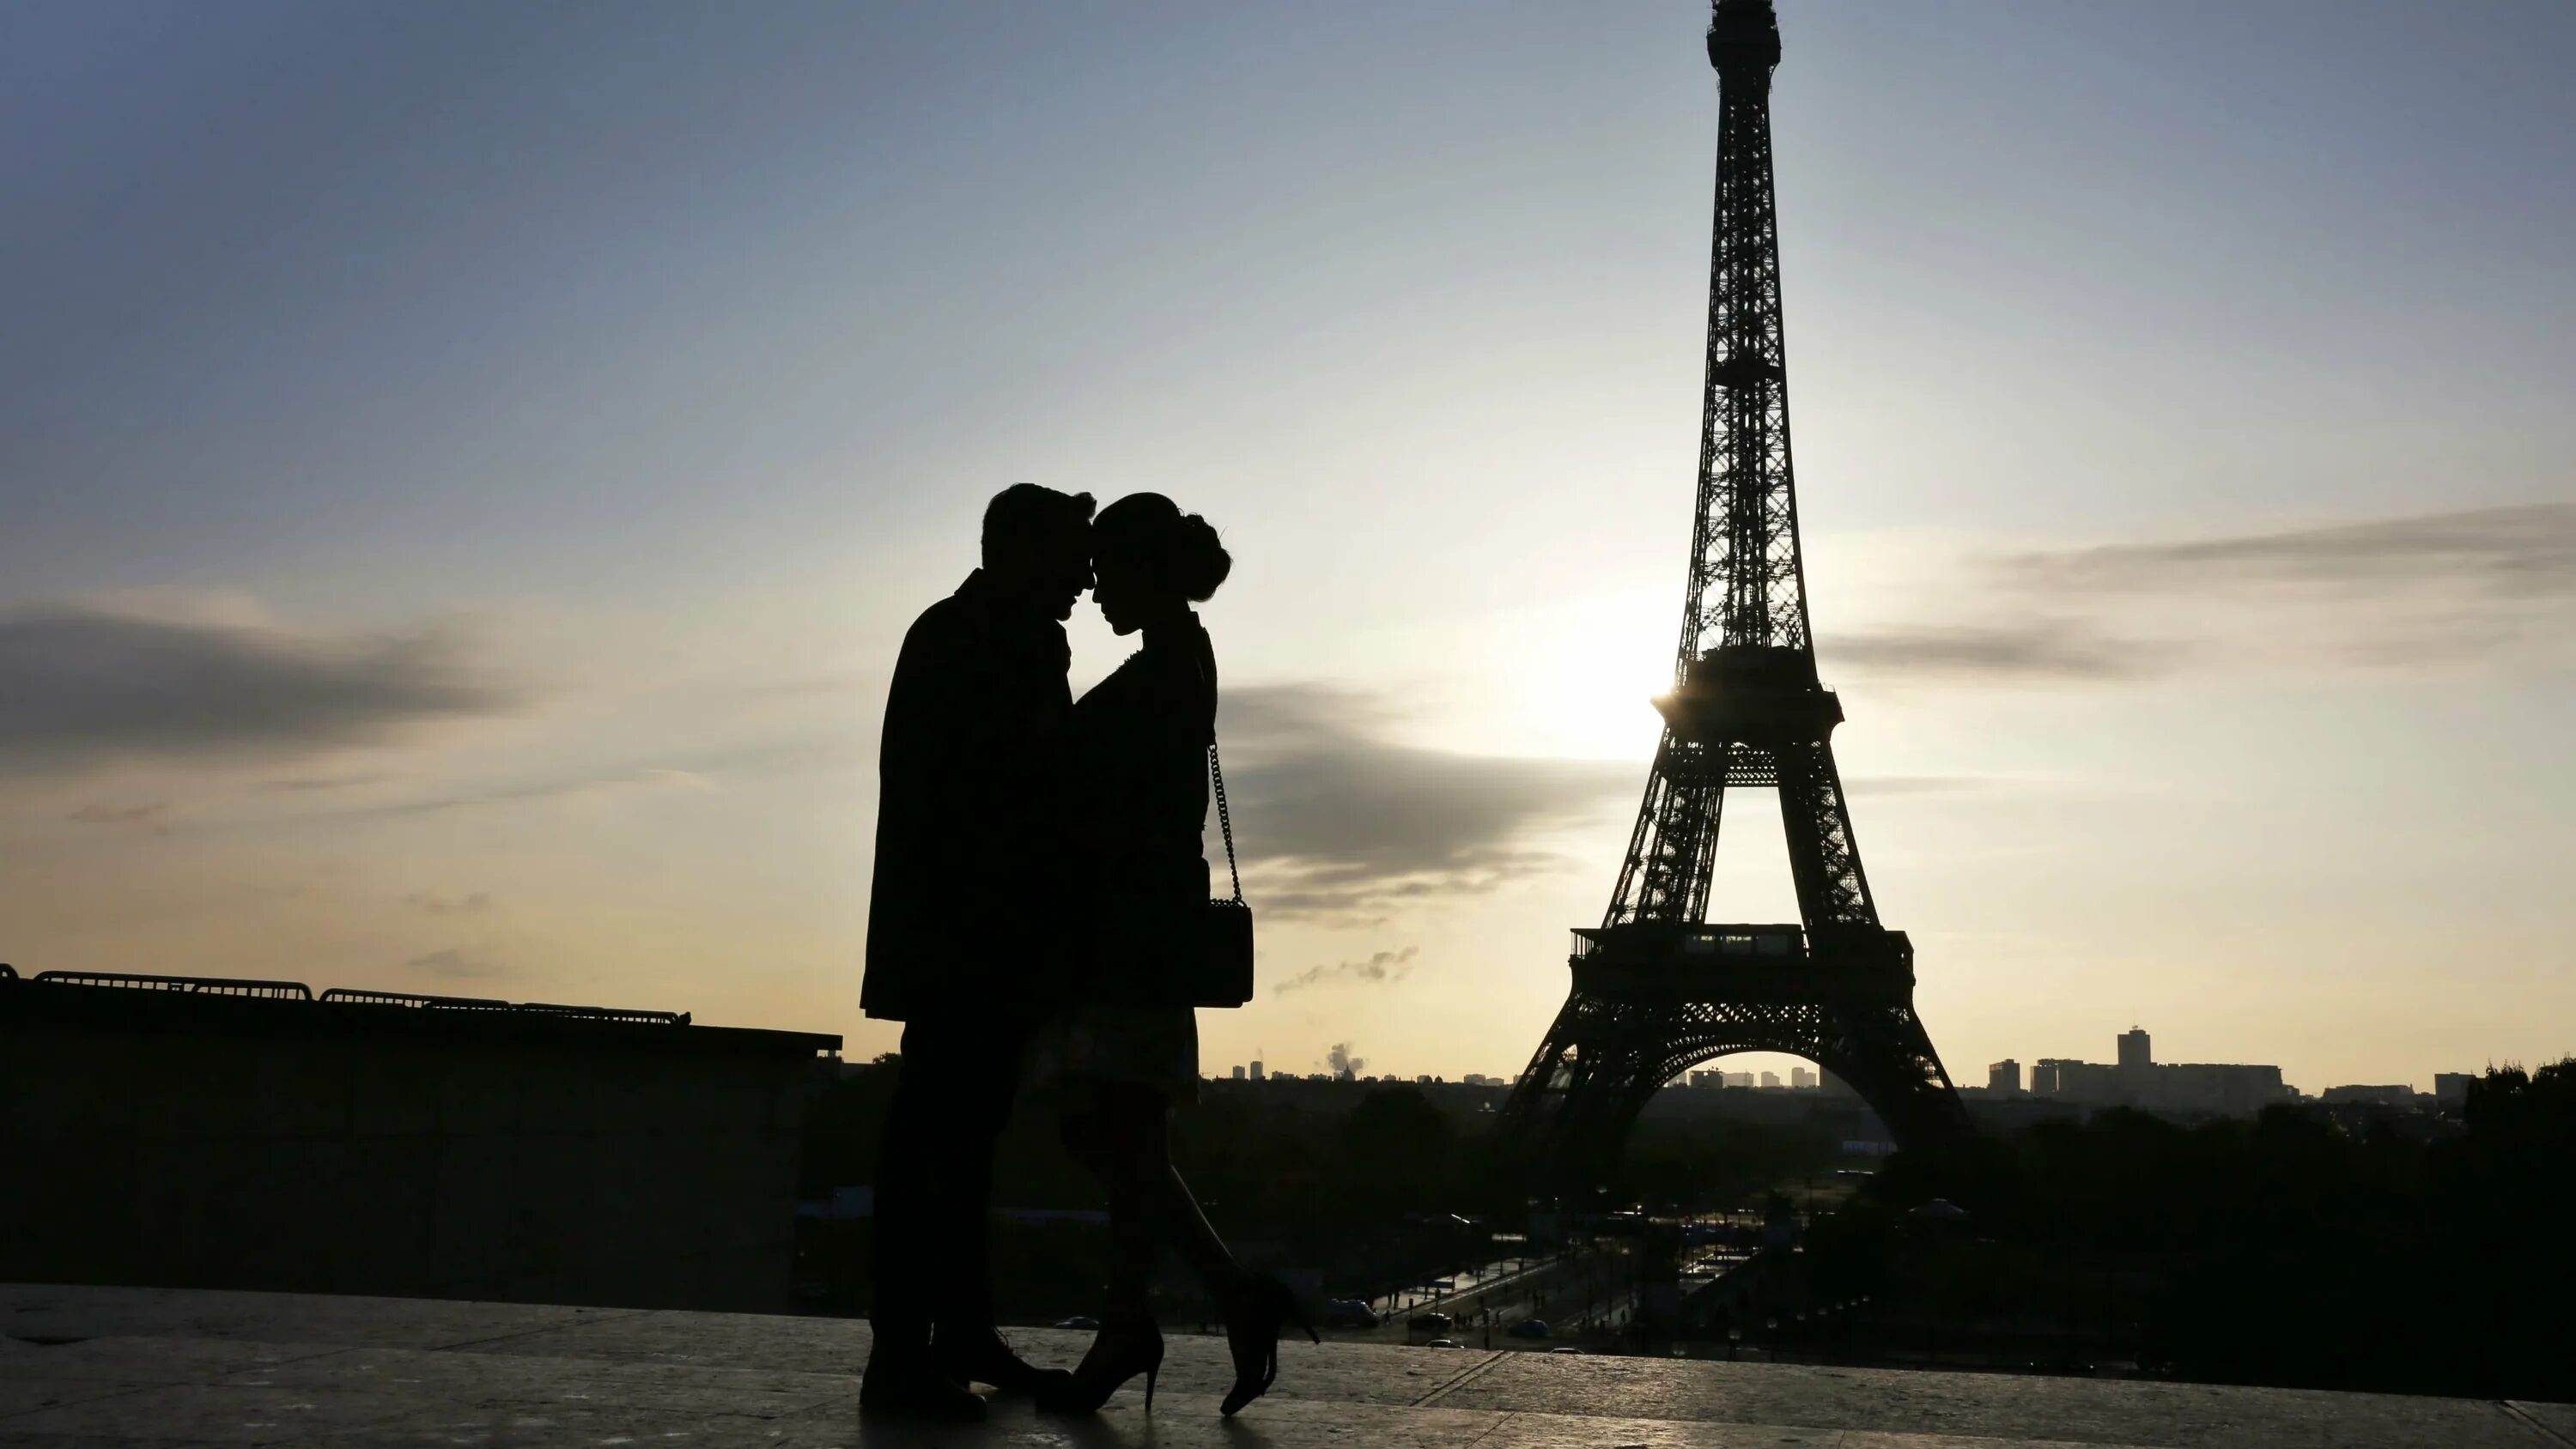 Париж Эйфелева башня любовь. Влюбленные в Париже. Париж романтика. Француз на фоне Эйфелевой башни. Скучаю по парижу